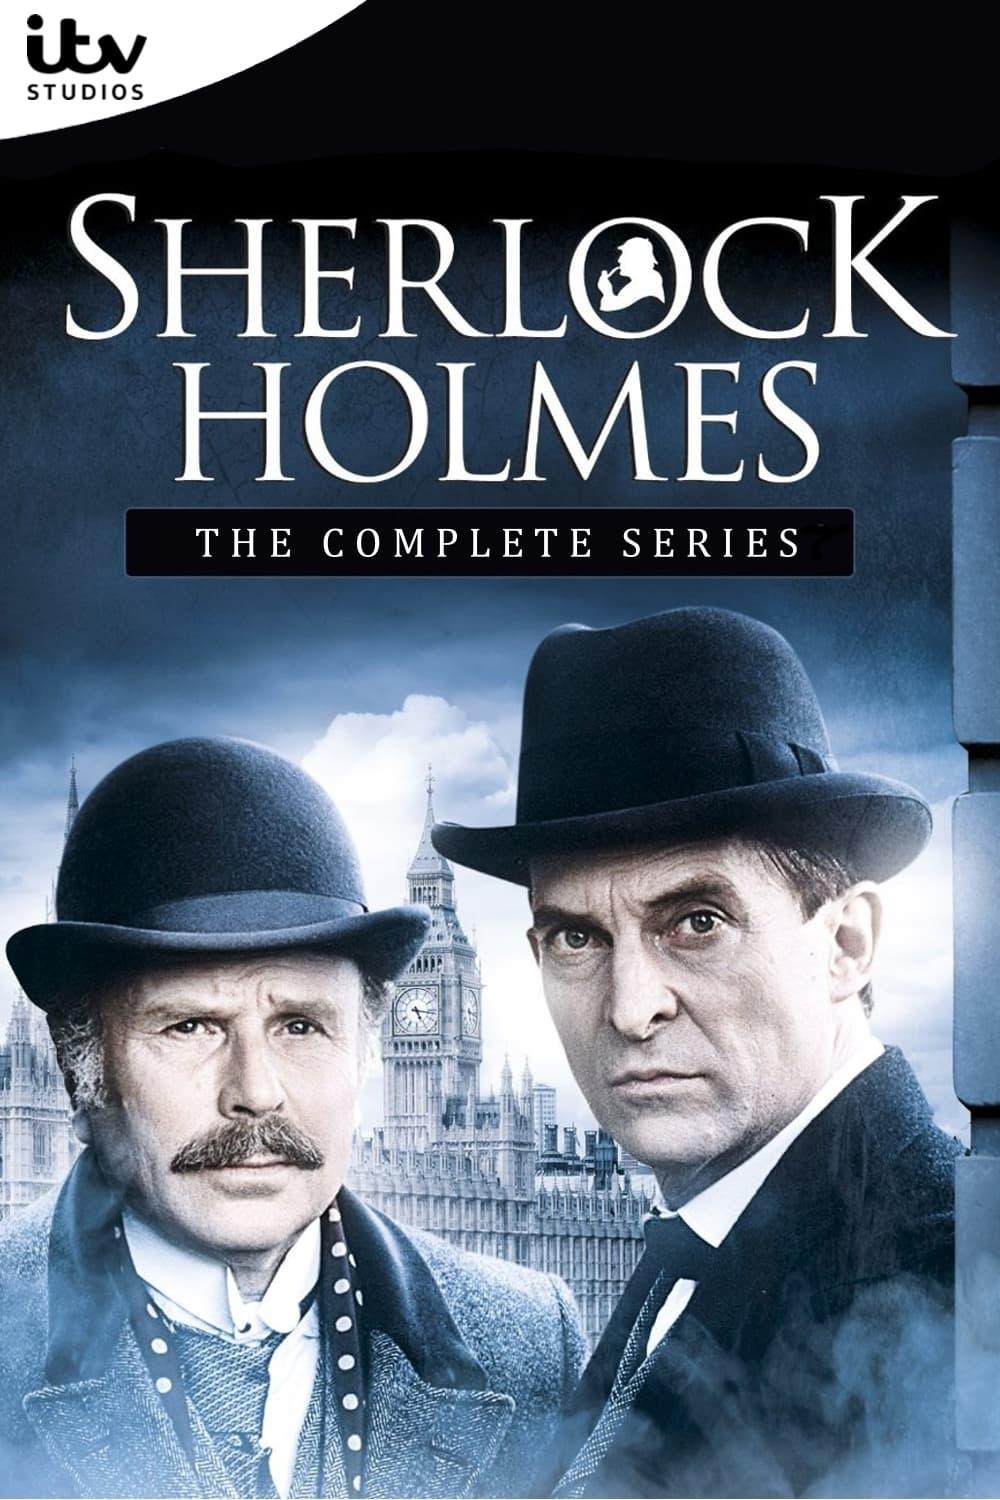 Affiche de la série Sherlock Holmes poster